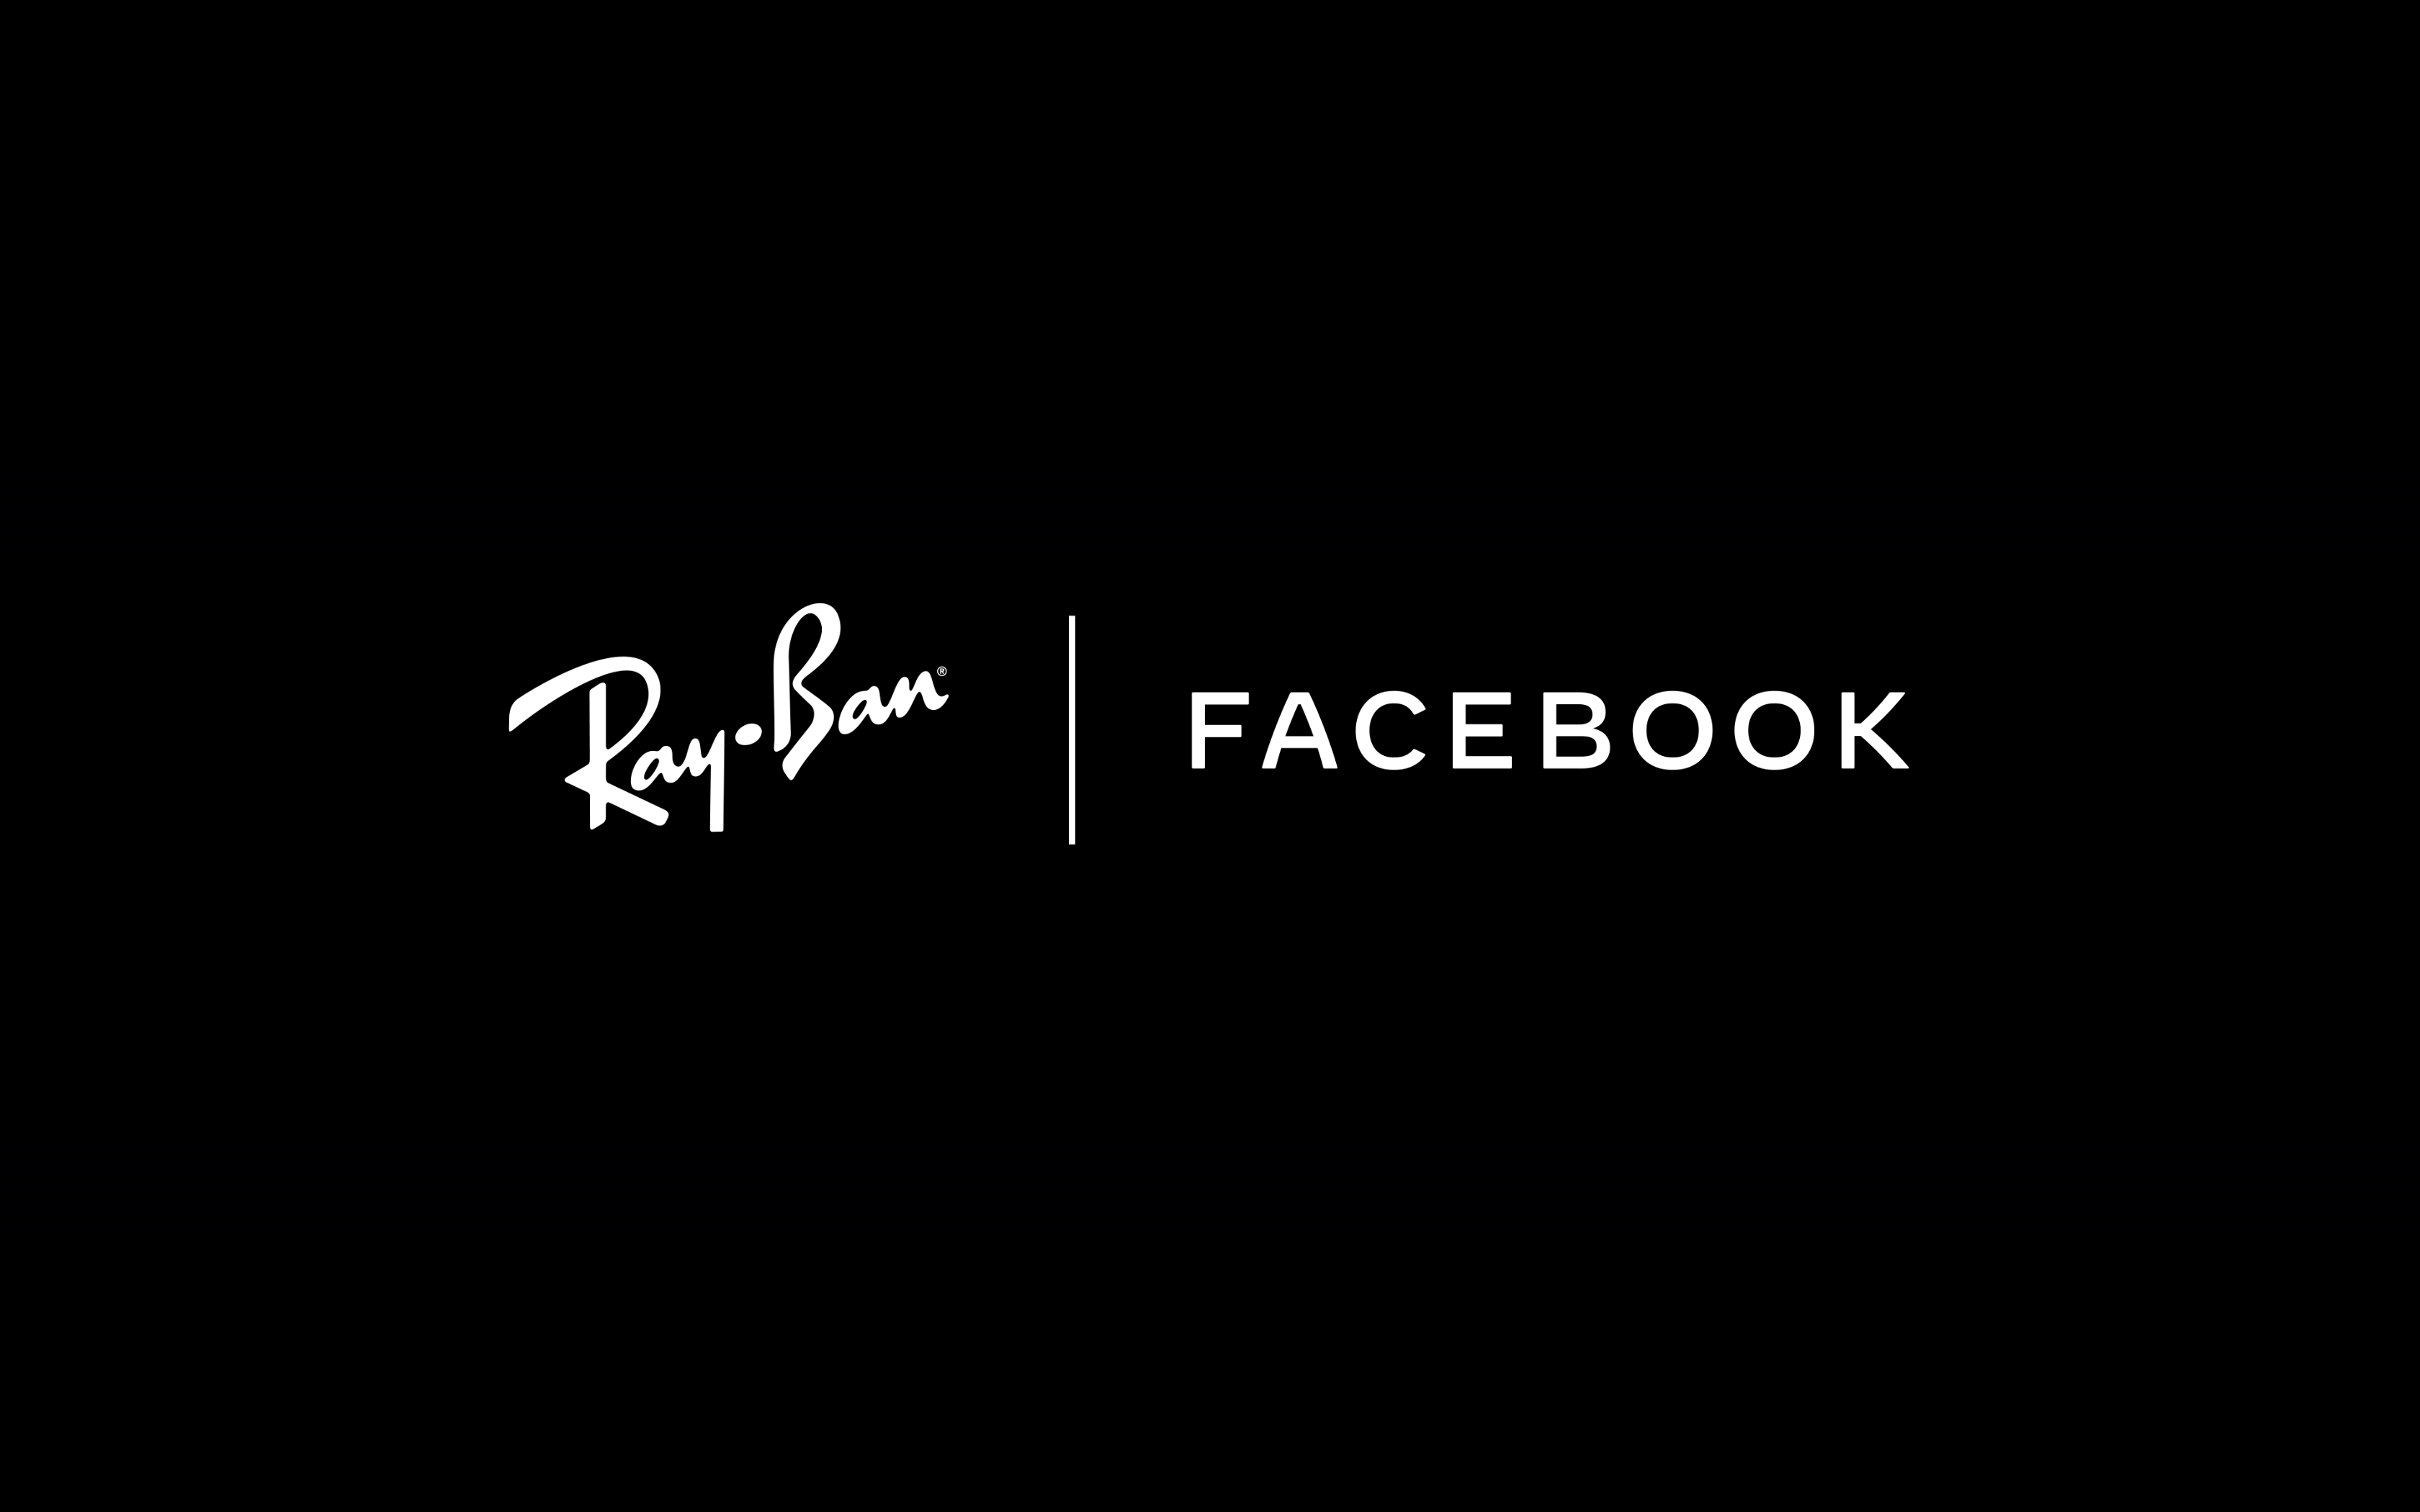 Facebook och Ray-Ban samarbetar om AR-glasögon